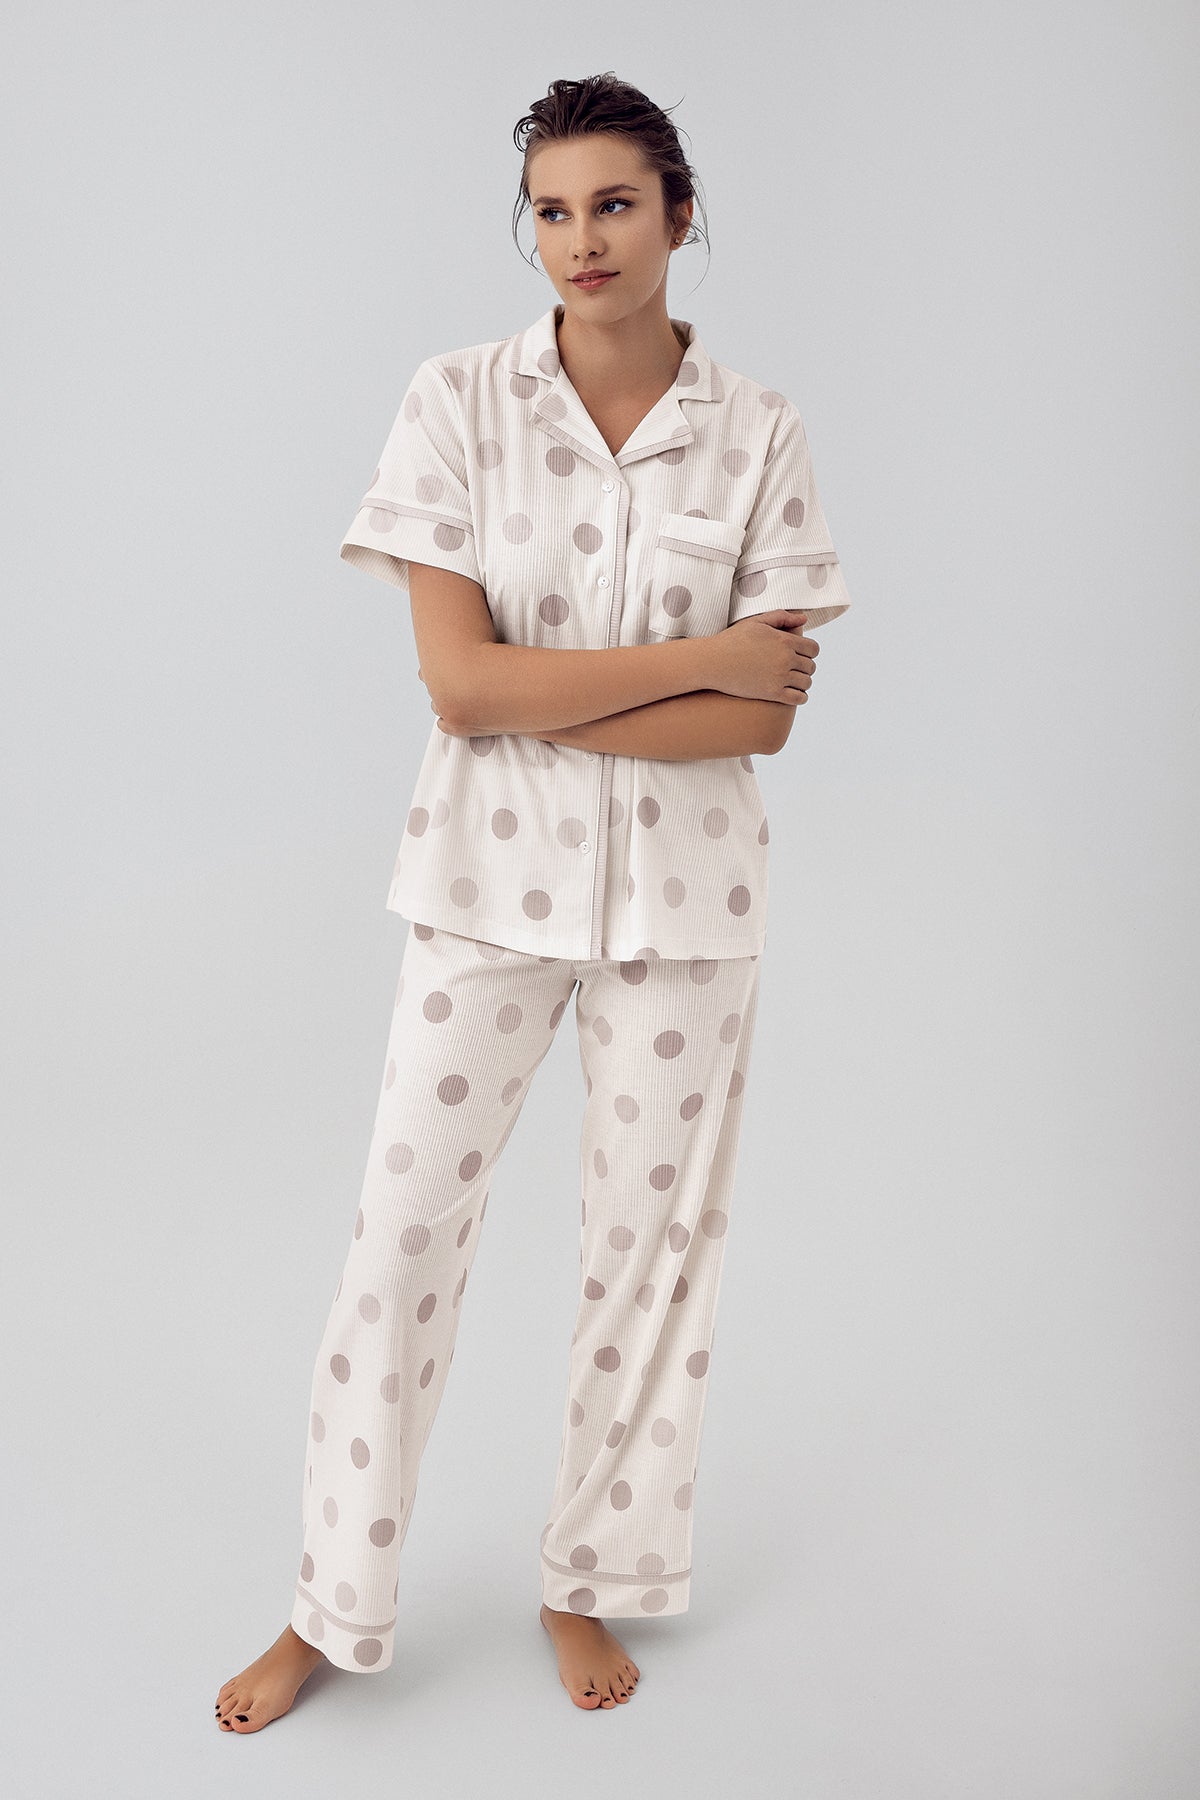 Shopymommy 16200 Polka Dot Maternity & Nursing Pajamas Beige